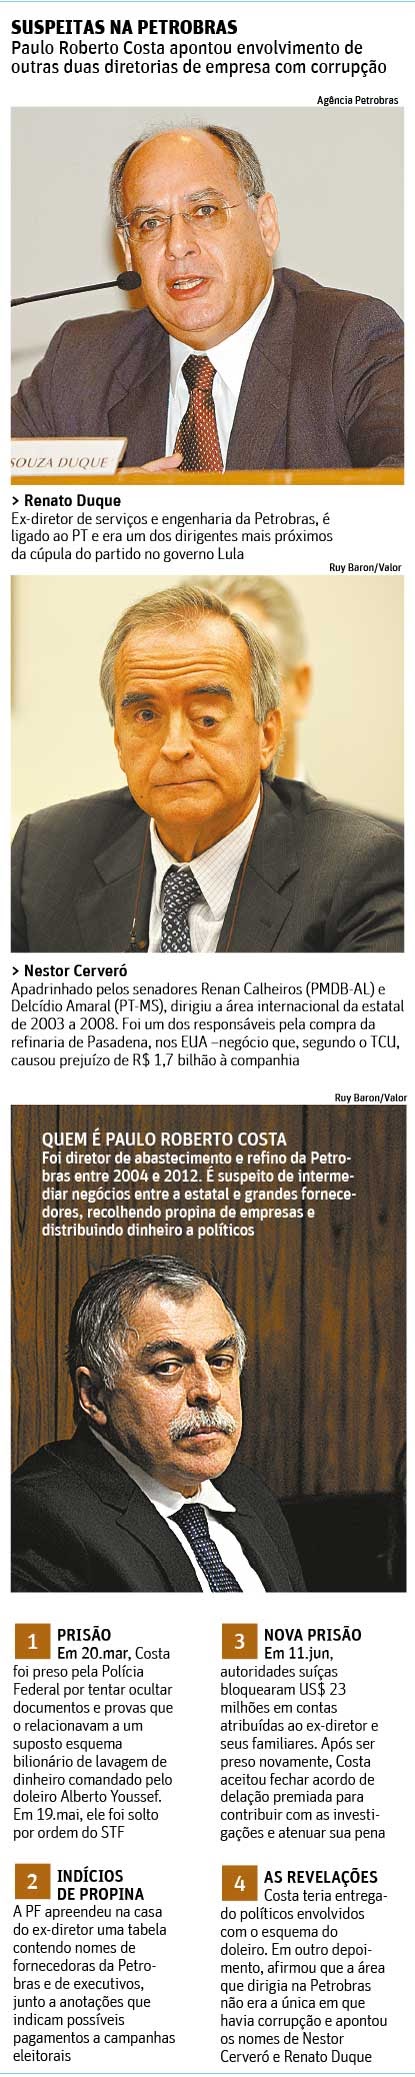 Delator liga dois ex-diretores a corrupção na Petrobras